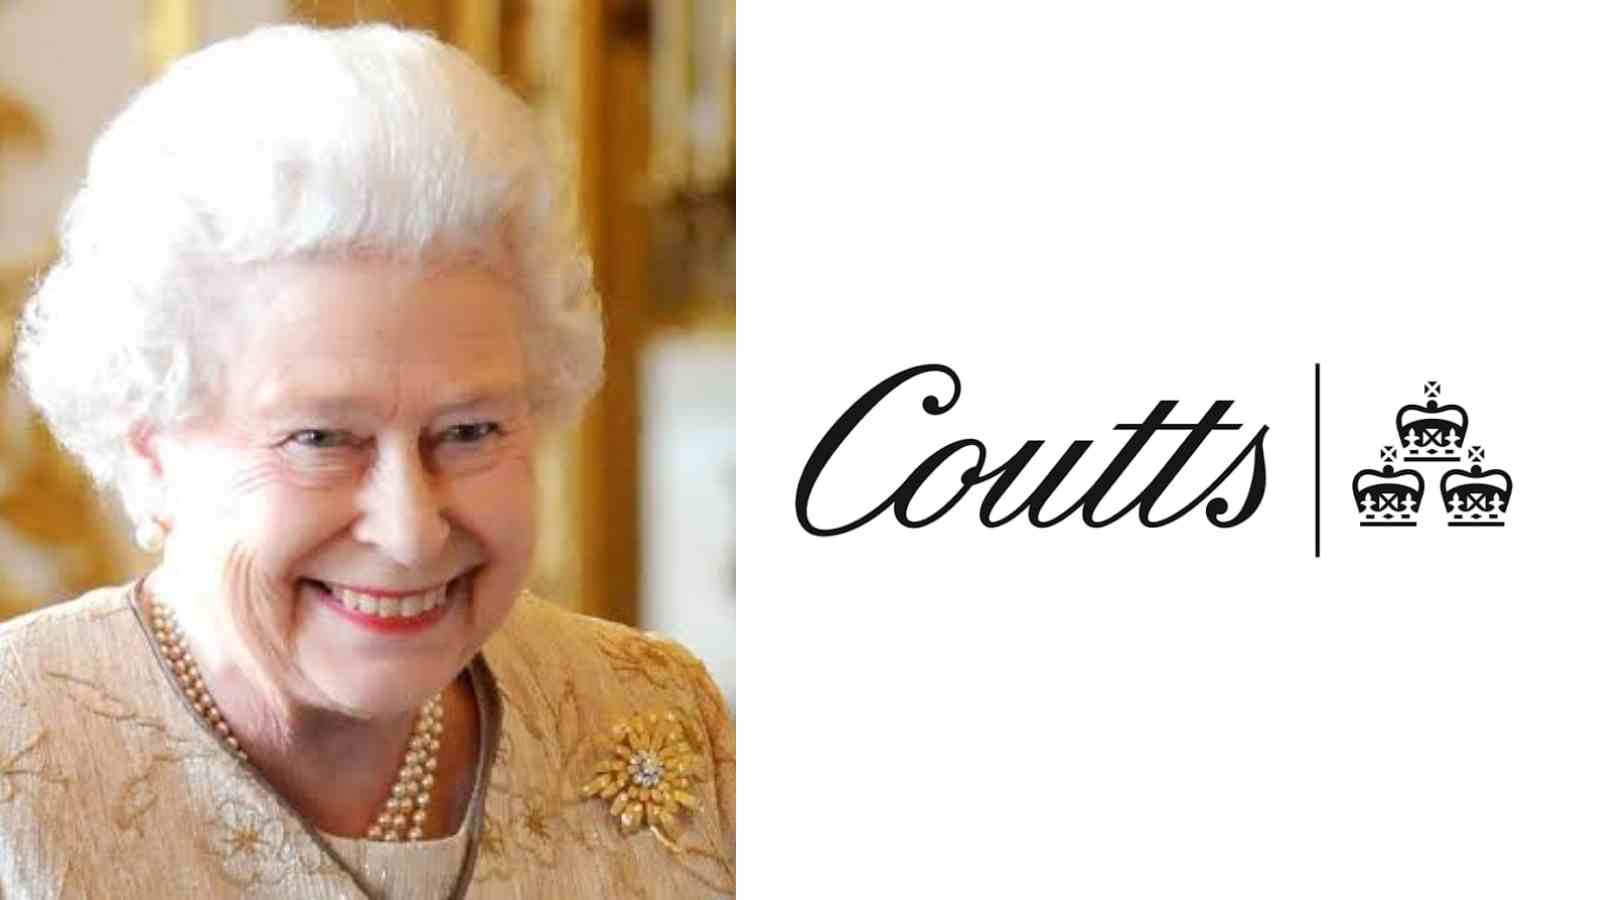 Queen Elizabeth has a Coutts ATM machine